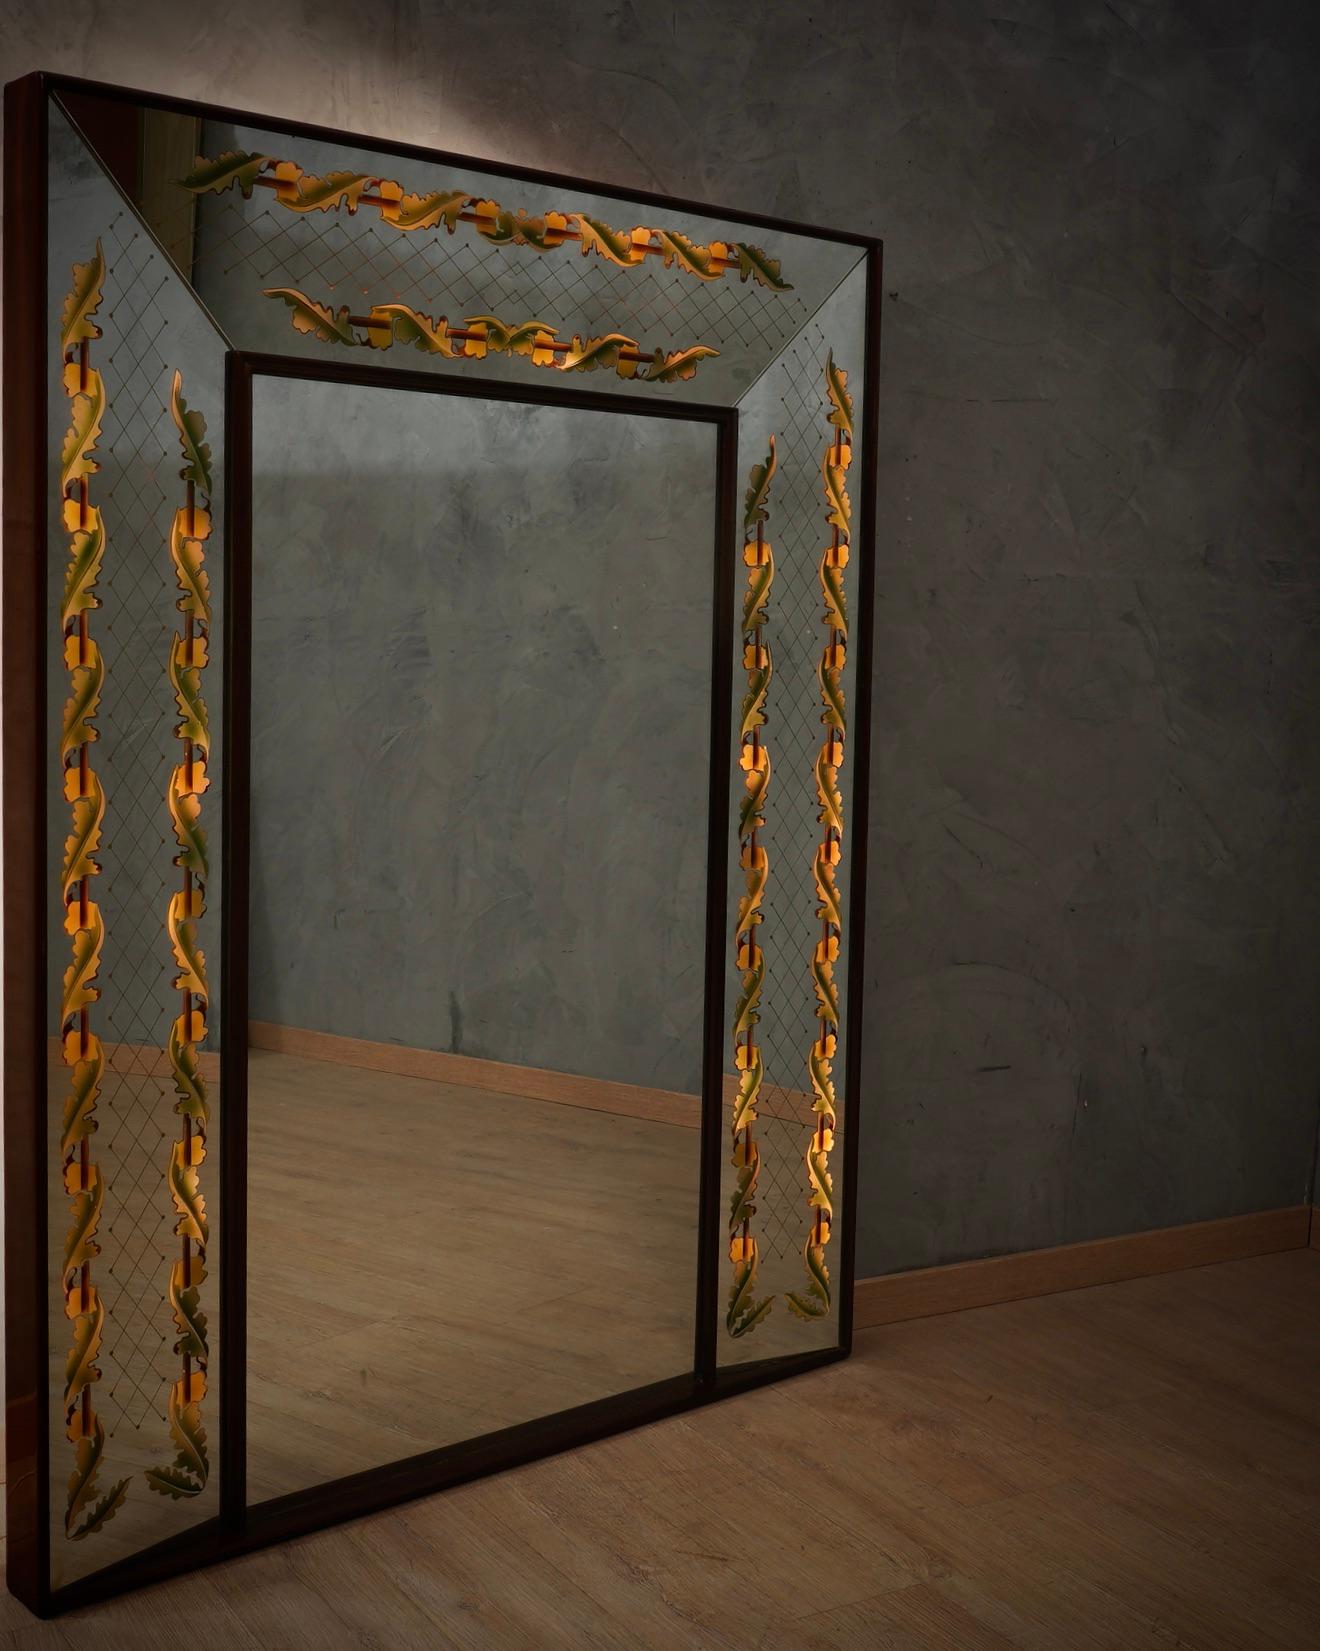 Miroir très élégant de Luigi Brusotti, au design original et unique, avec électrification interne.

Le miroir a une structure en bois, et tout le périmètre est orné de moulures en bois de noyer. La partie frontale est constituée d'un miroir et d'un